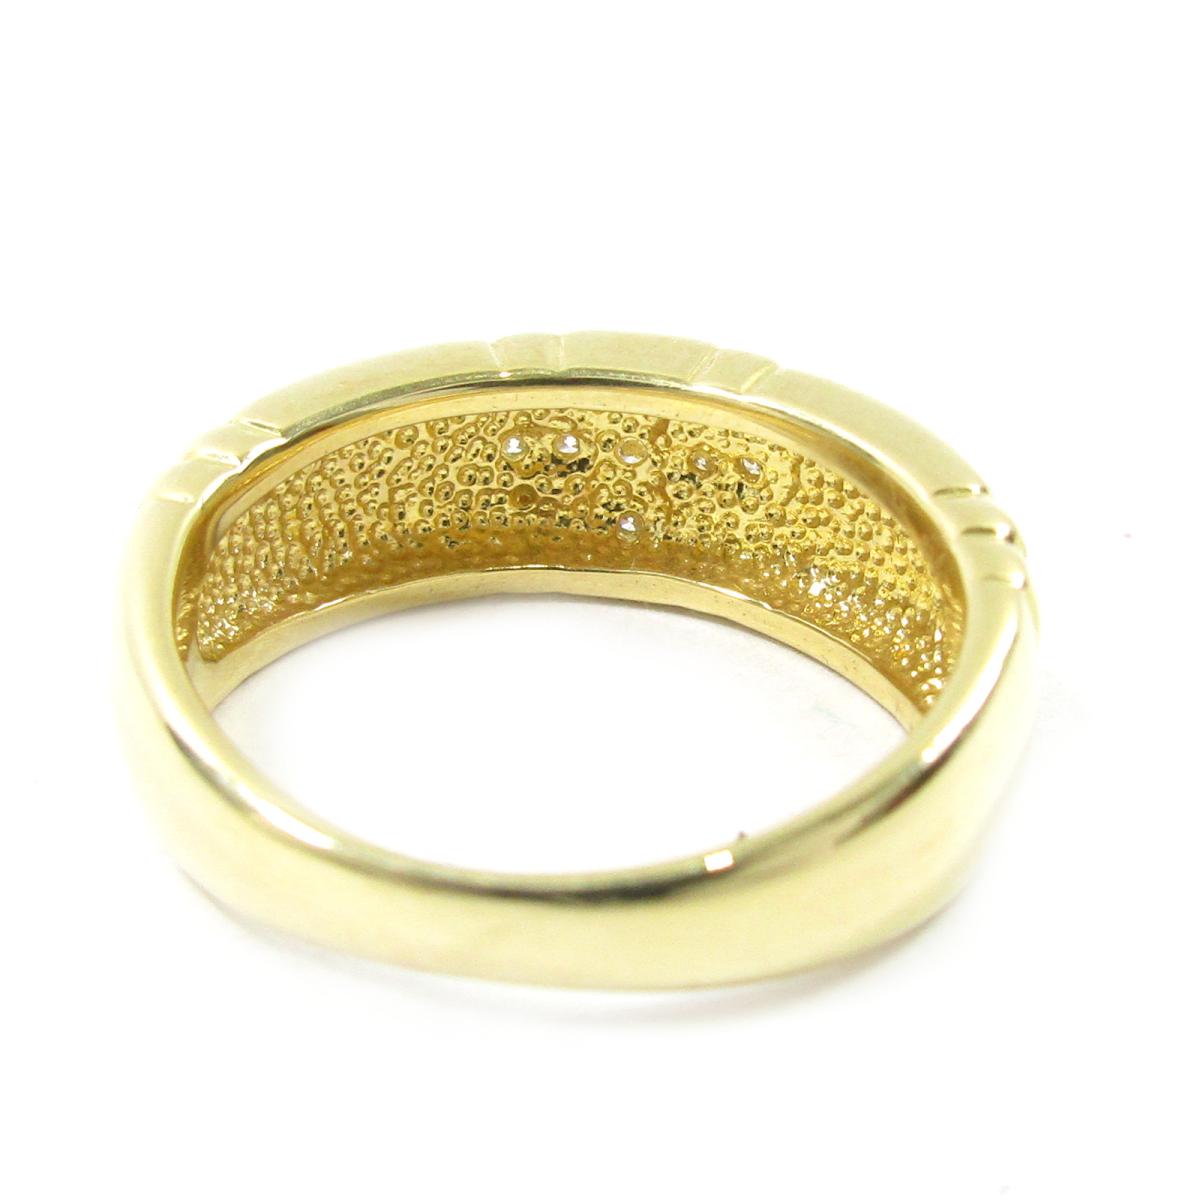 【楽天市場】【中古】 ジュエリー ダイヤモンドリング 指輪 レディース K18YG (750) イエローゴールド ダイヤモンド0.06ct